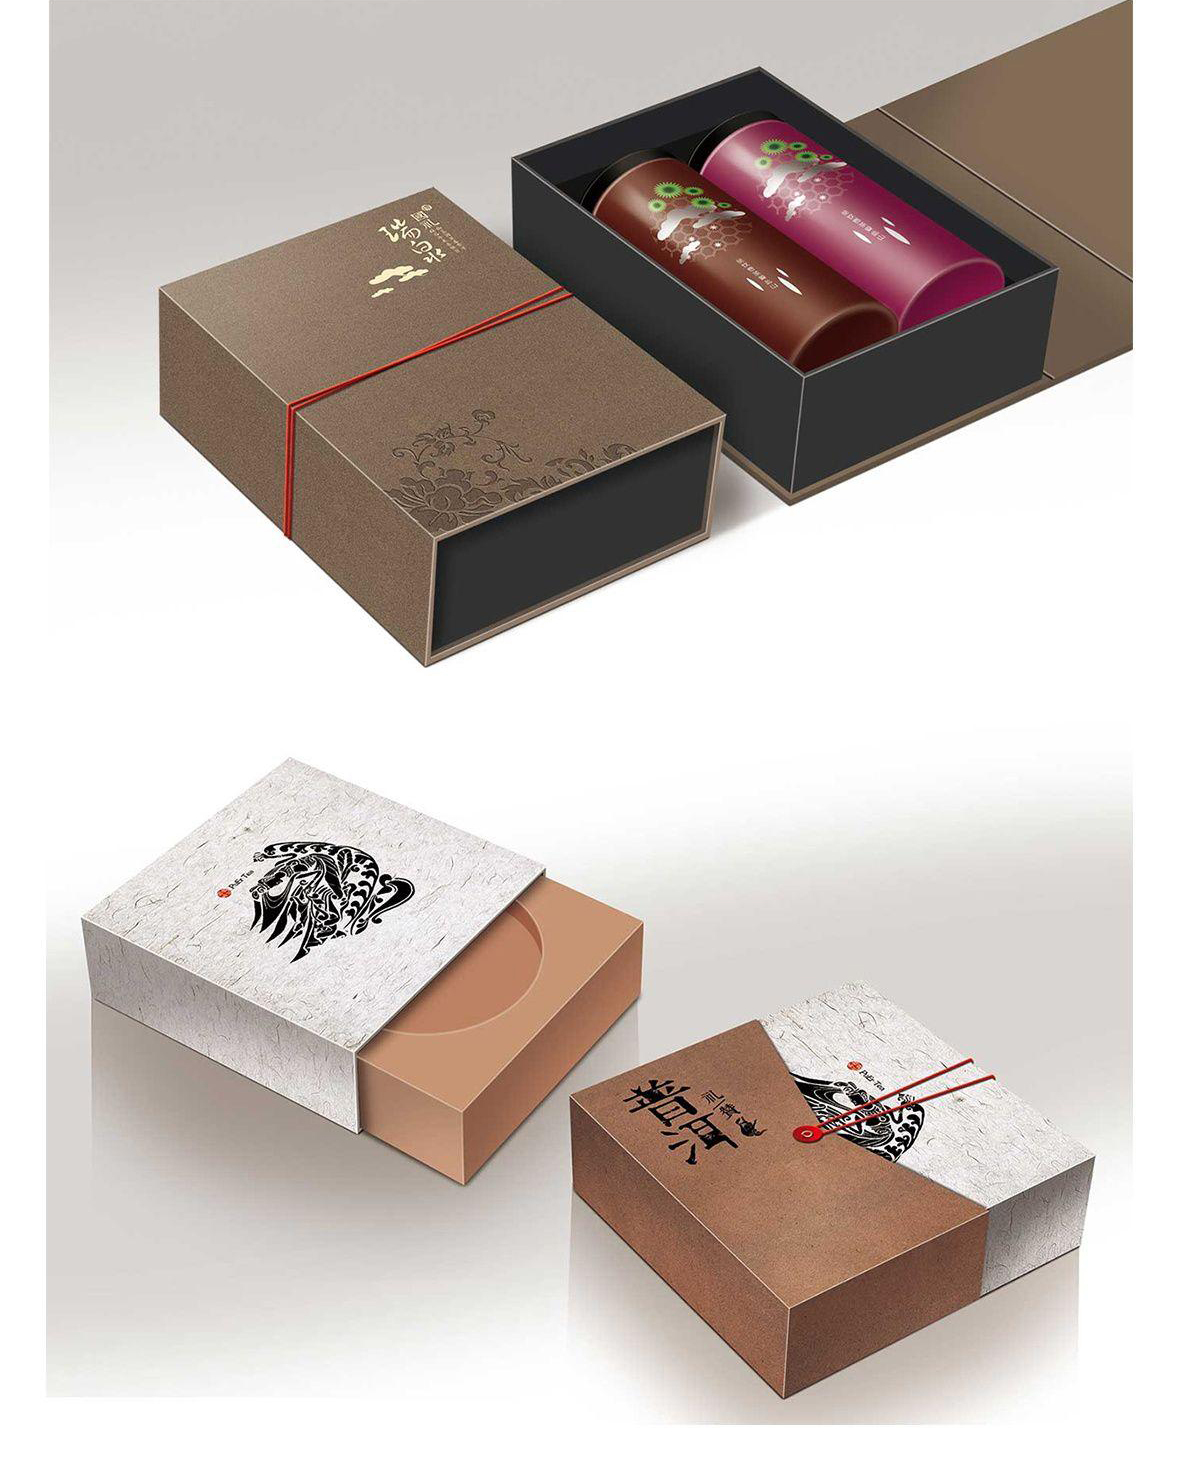 中国茶系列礼盒包装图1